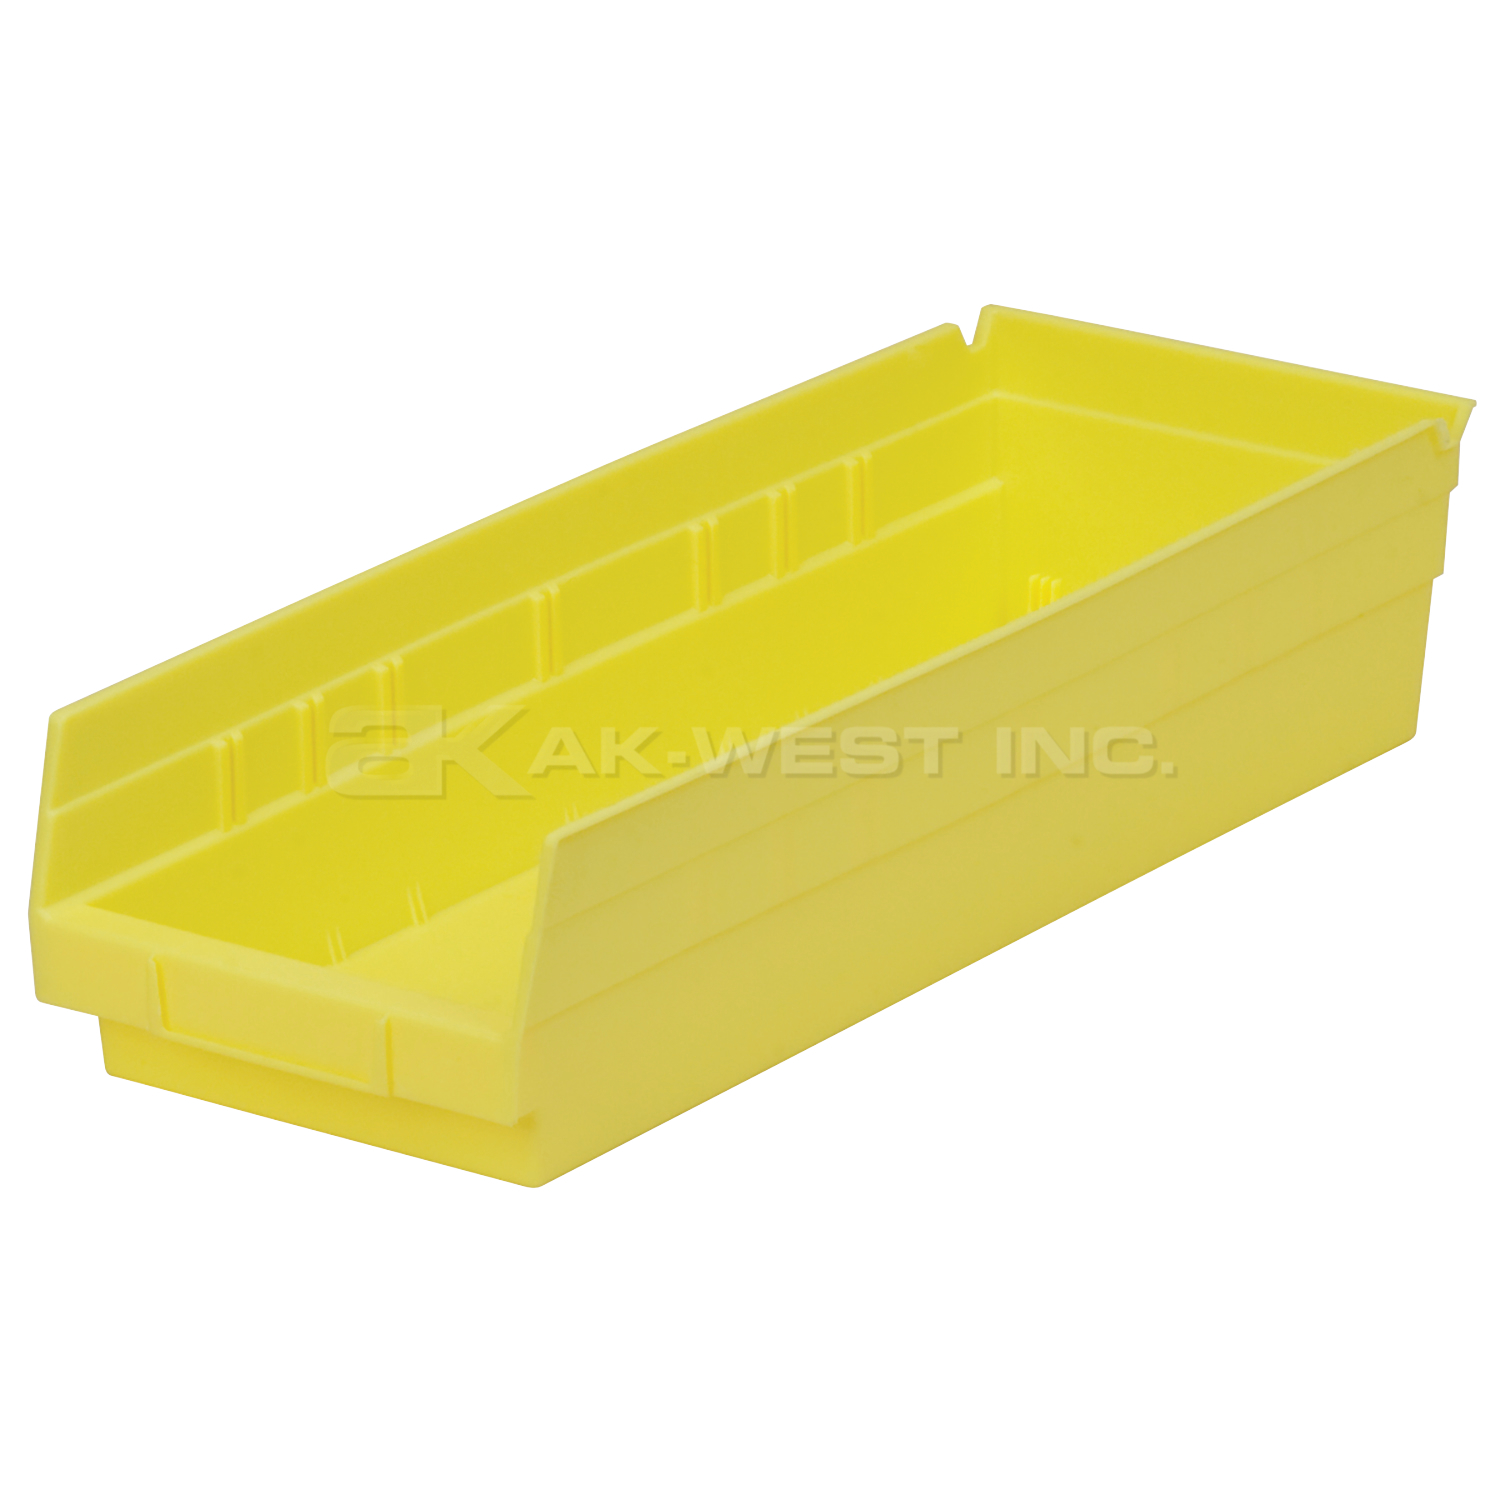 Yellow, 17-7/8" x 6-5/8" x 4" Shelf Bin (12 Per Carton)